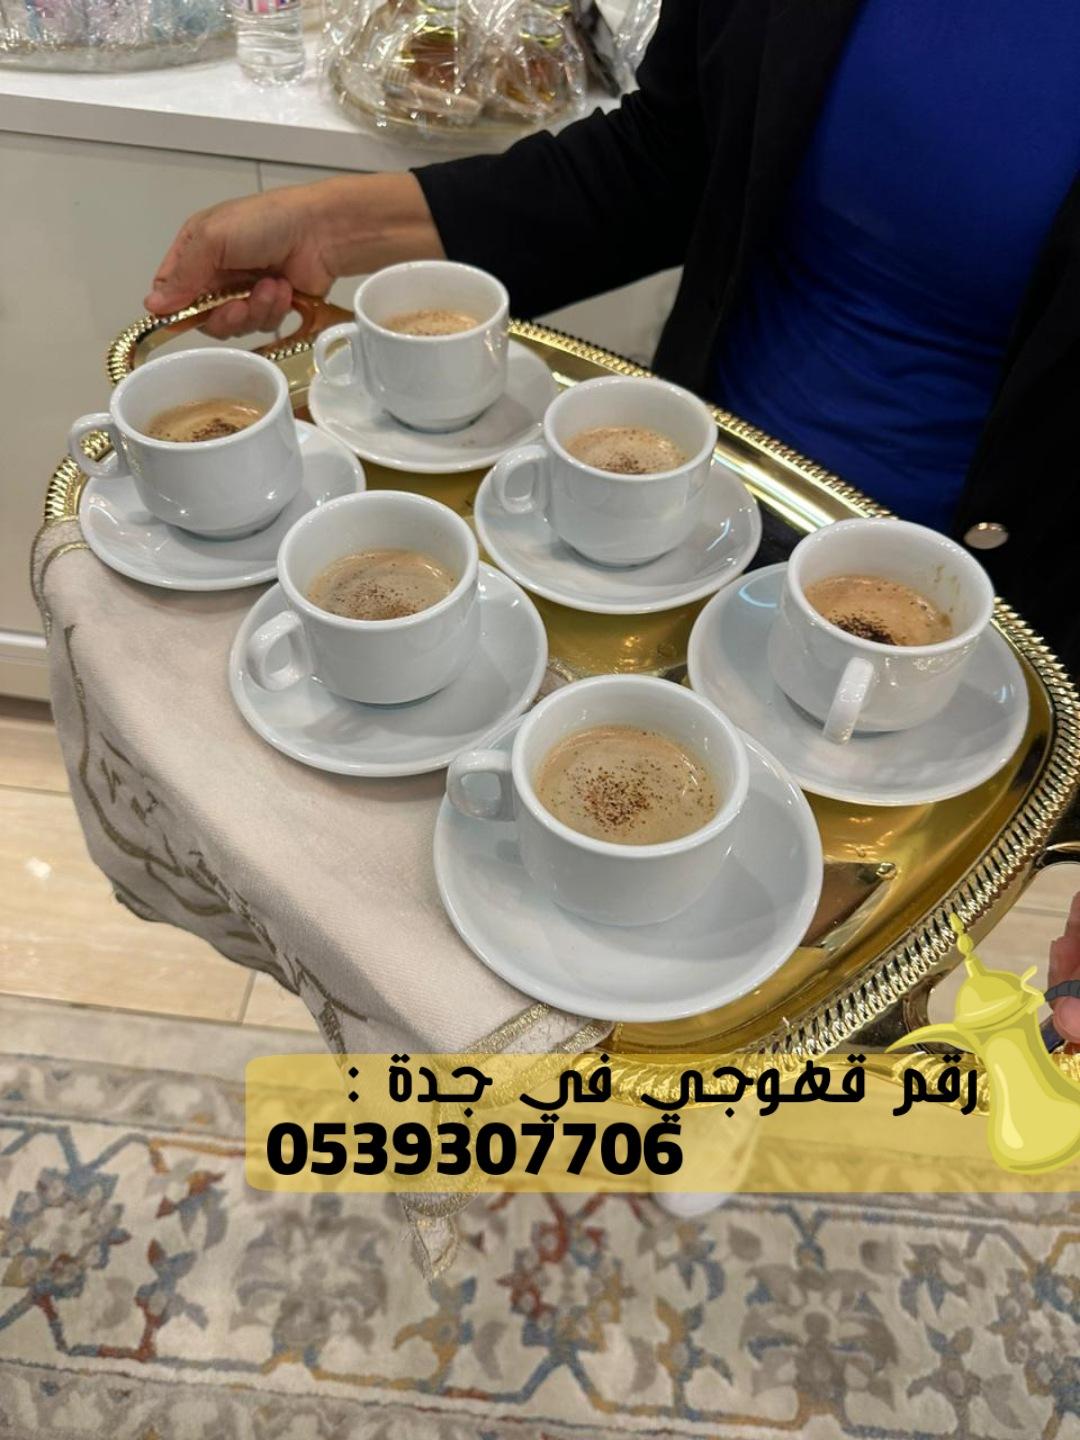 صبابين قهوه قهوجي و مباشرات زواج في جدة,0539307706  648013952